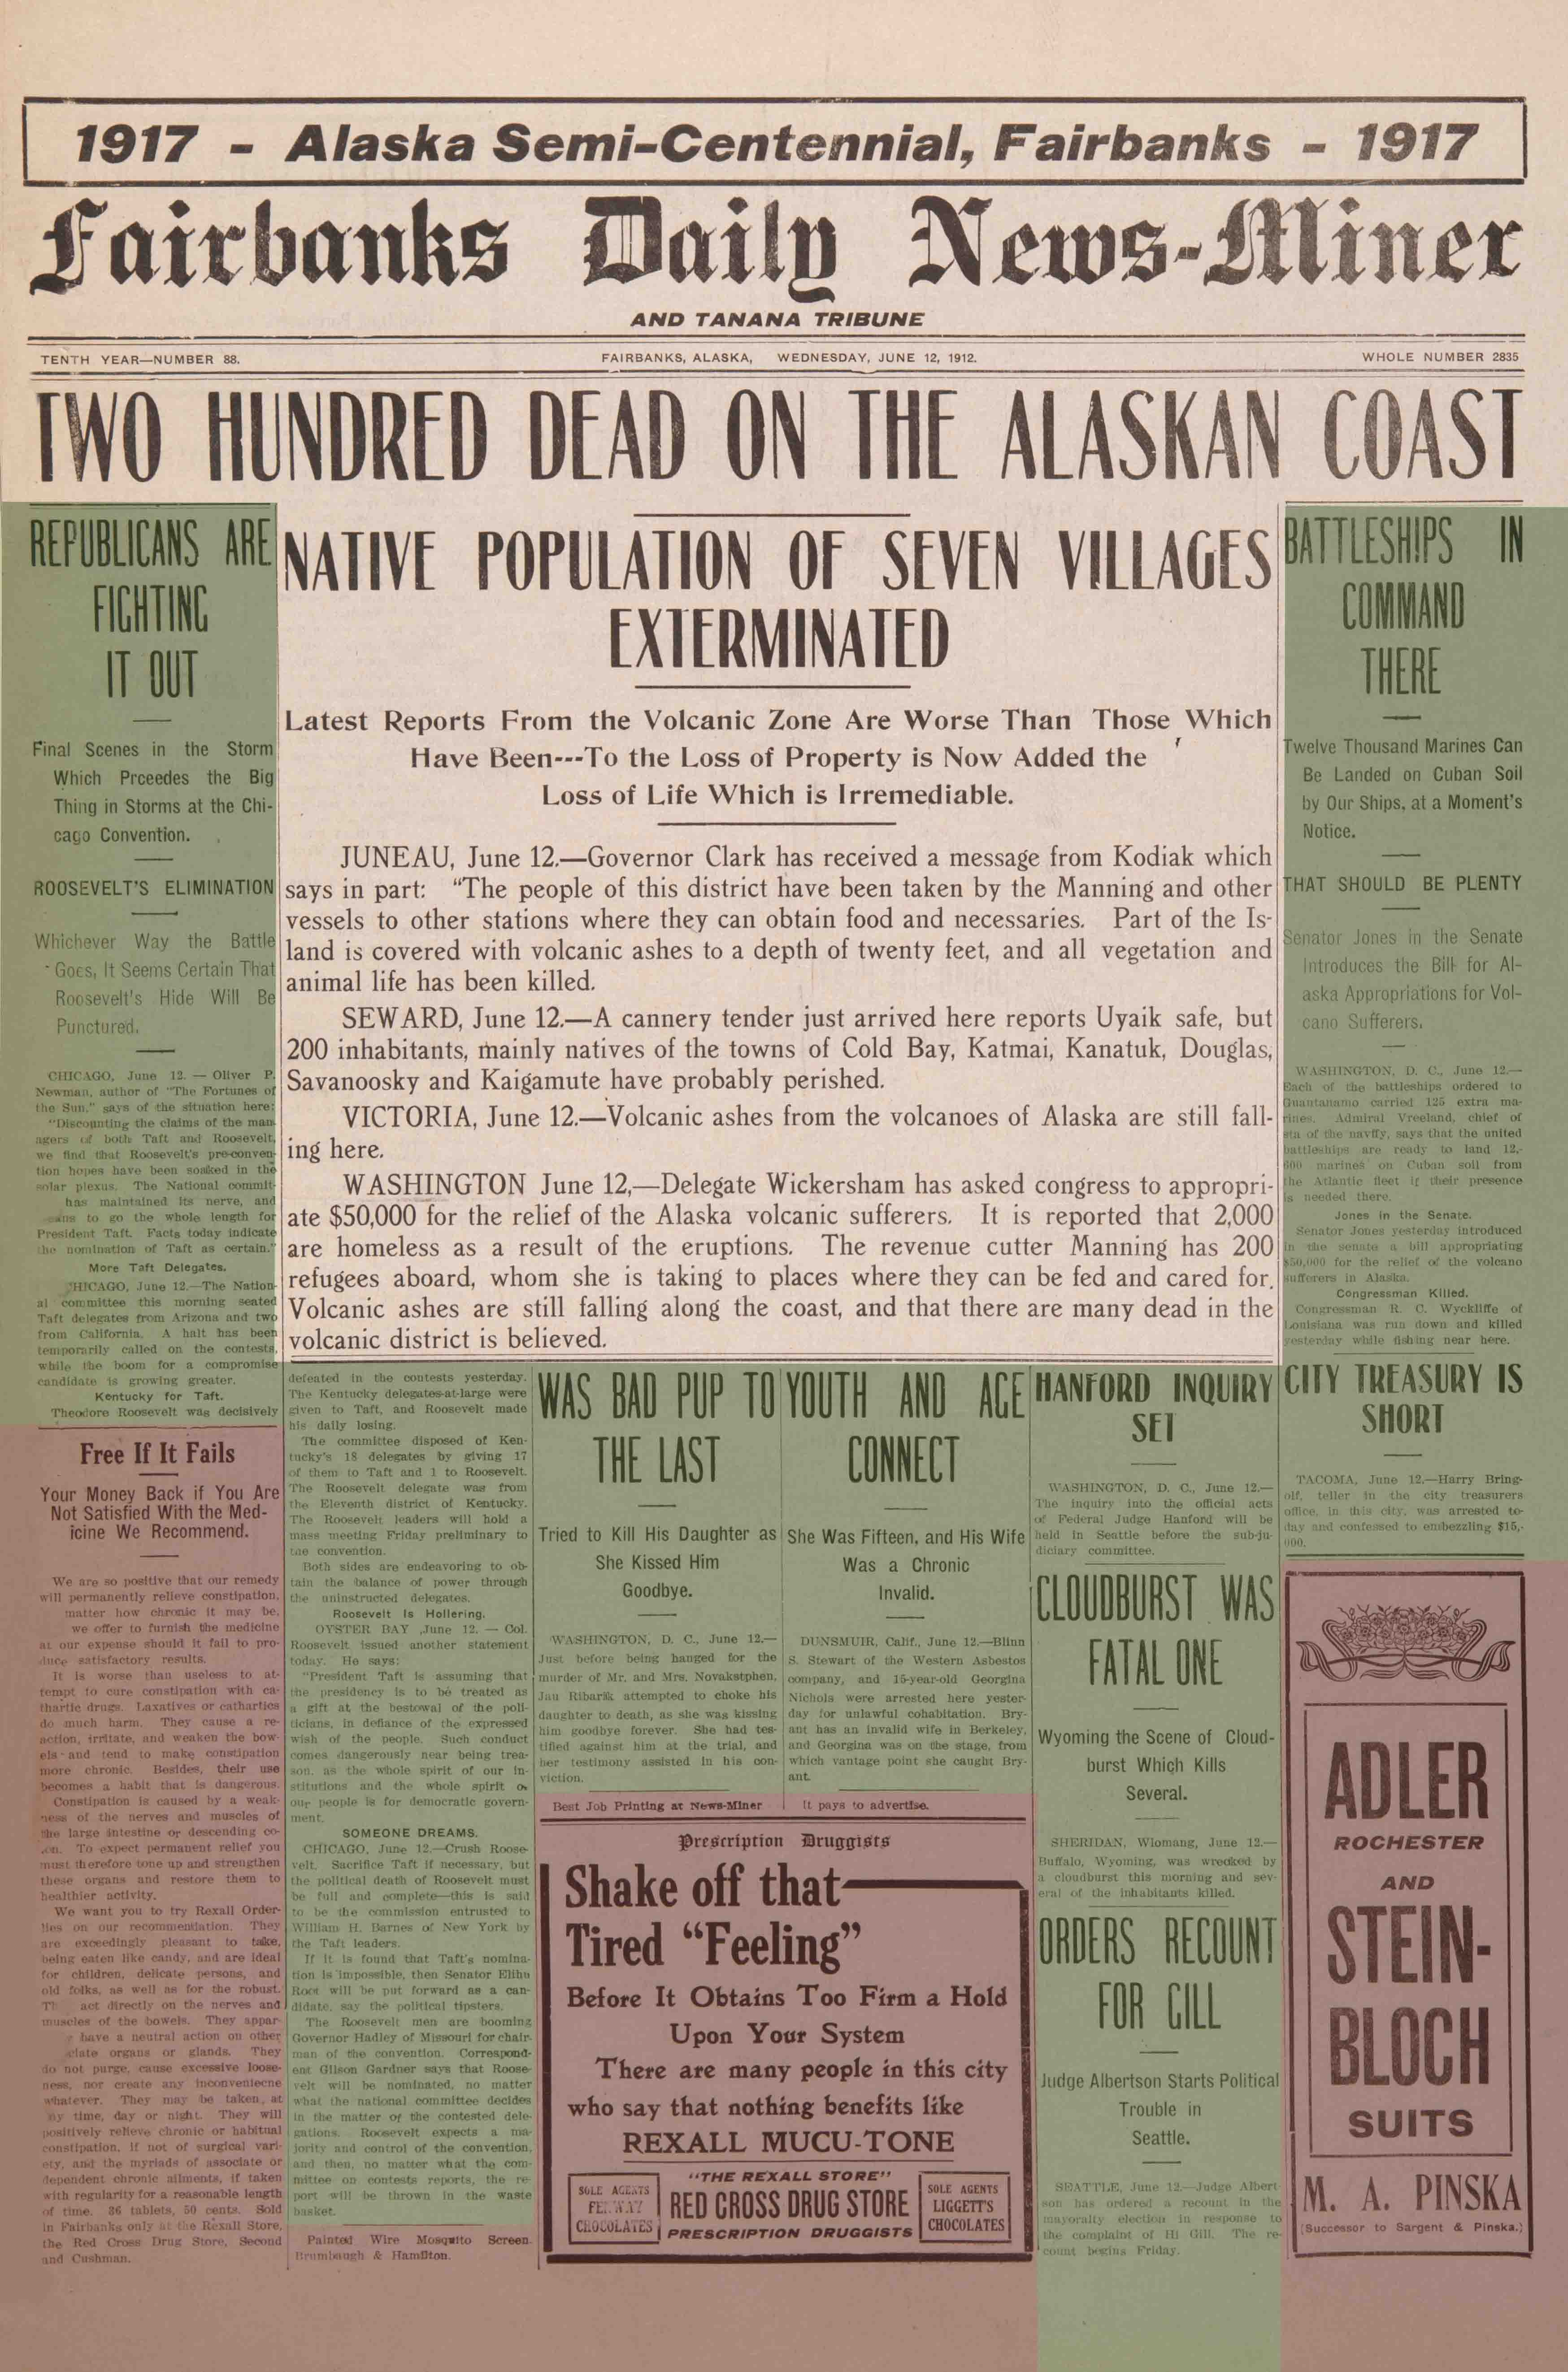 1912 June 12, Fairbanks Daily News-Miner (pg 1)